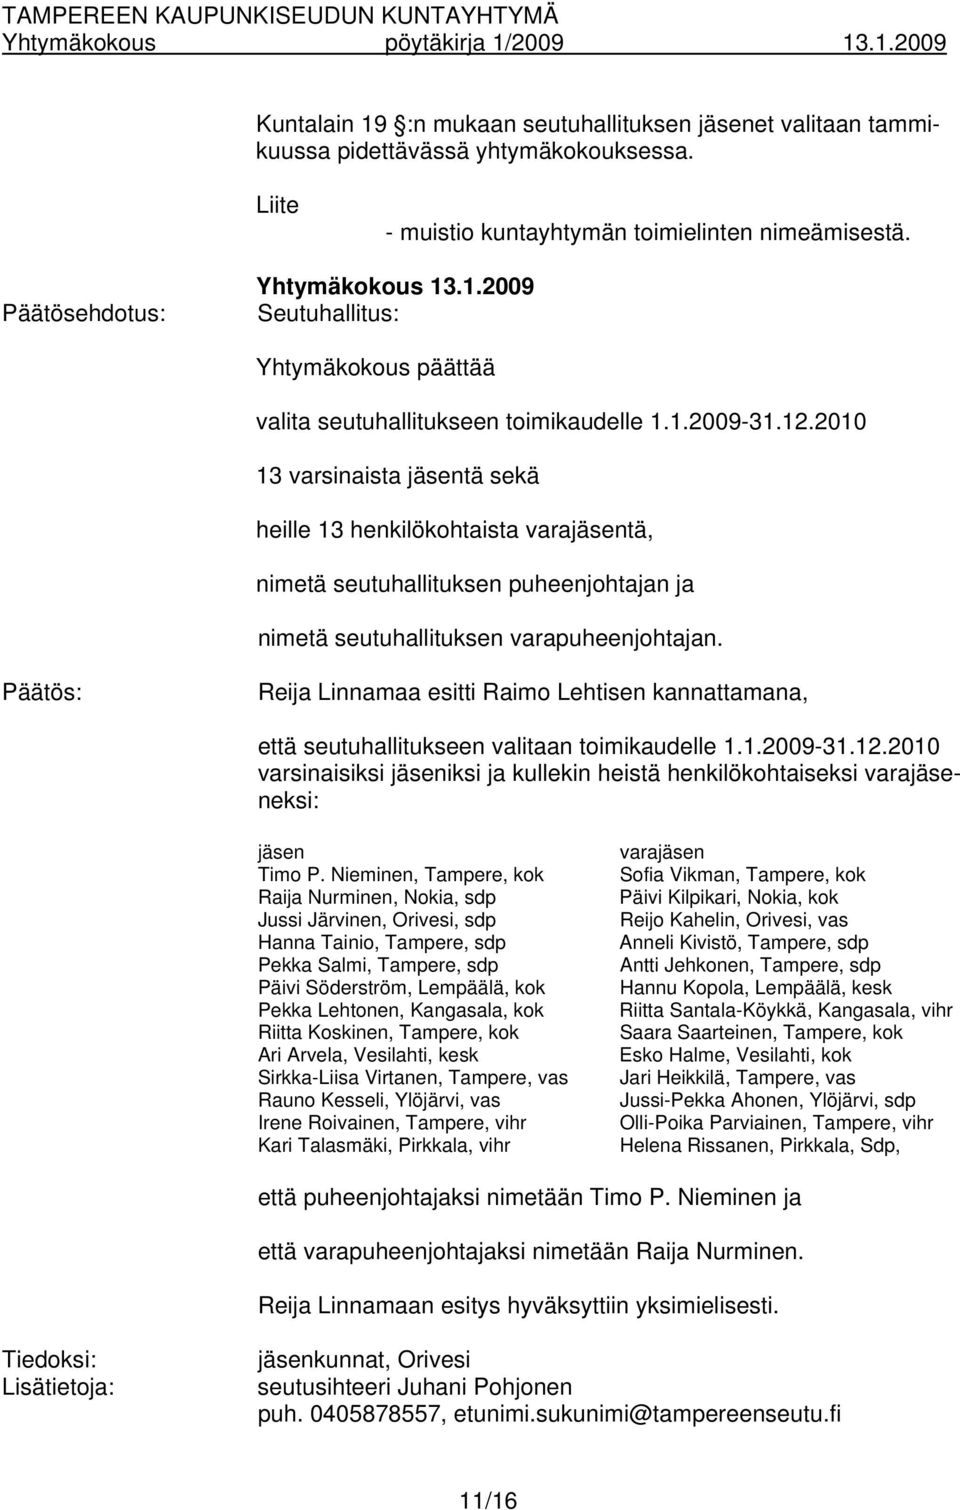 Päätös: Reija Linnamaa esitti Raimo Lehtisen kannattamana, että seutuhallitukseen valitaan toimikaudelle 1.1.2009-31.12.